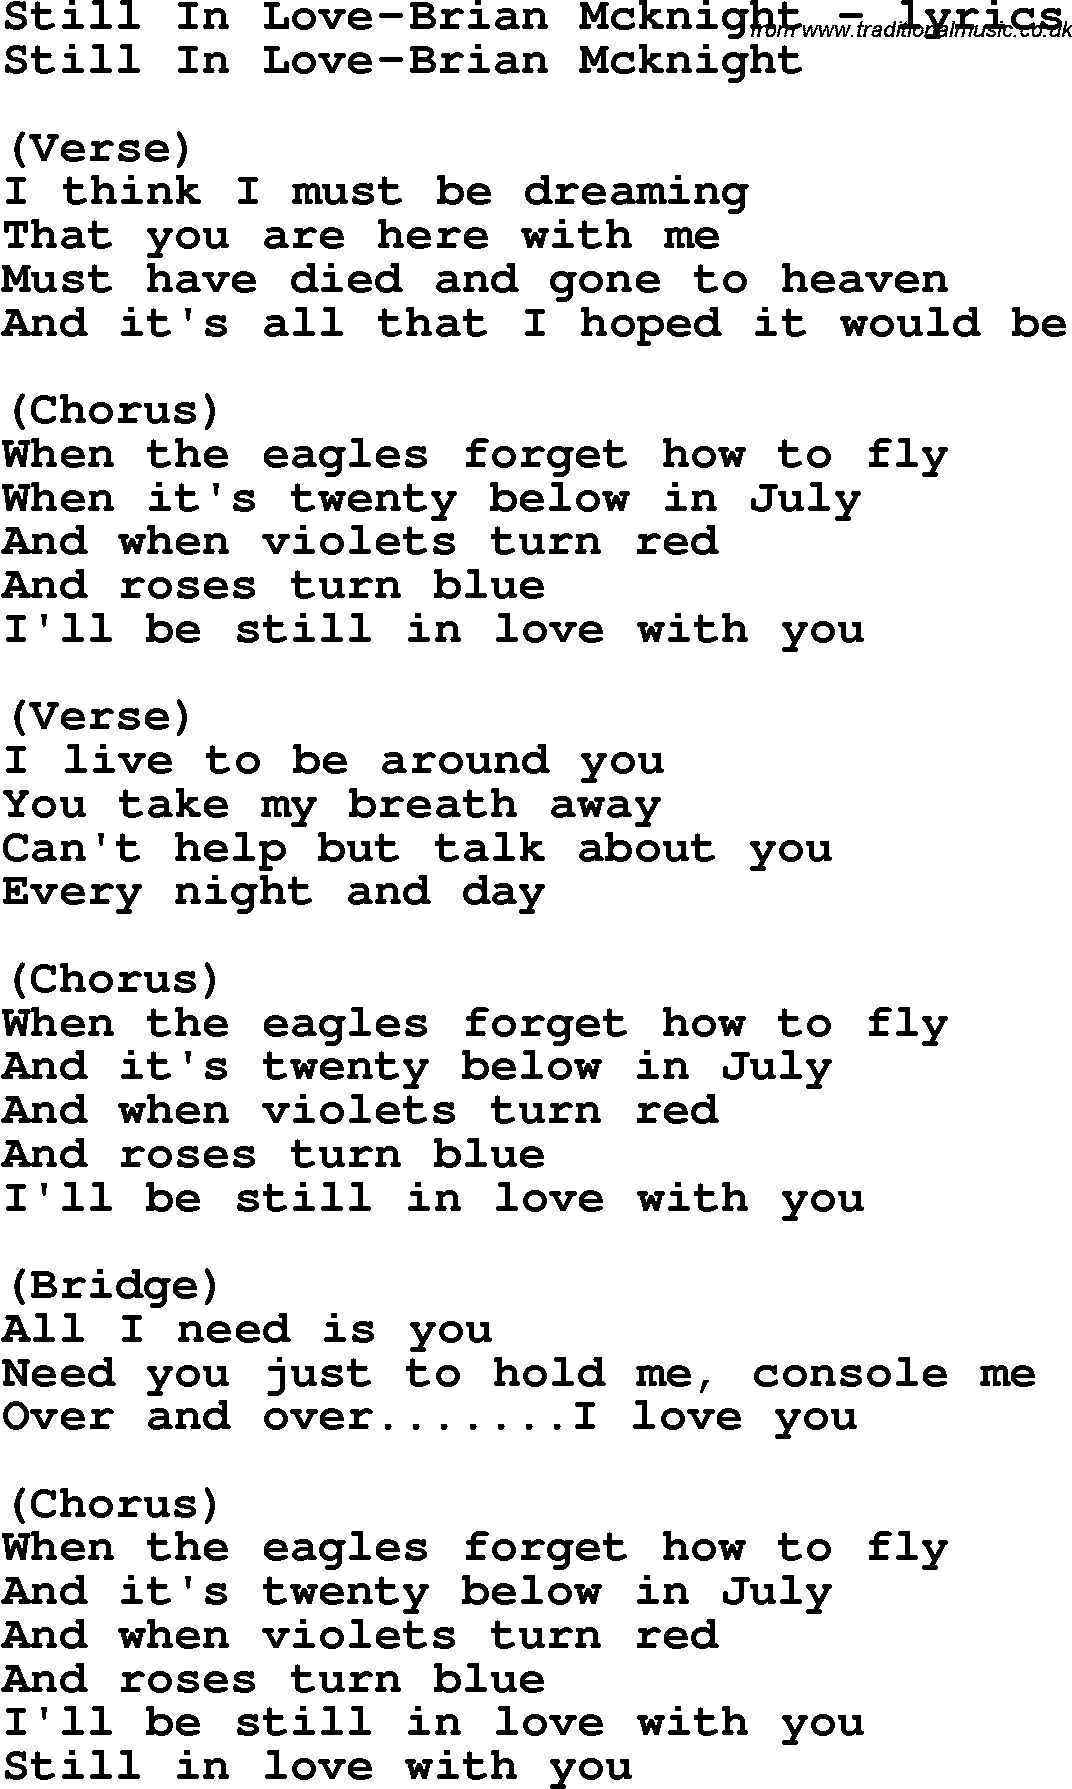 Love Song Lyrics for: Still In Love-Brian Mcknight